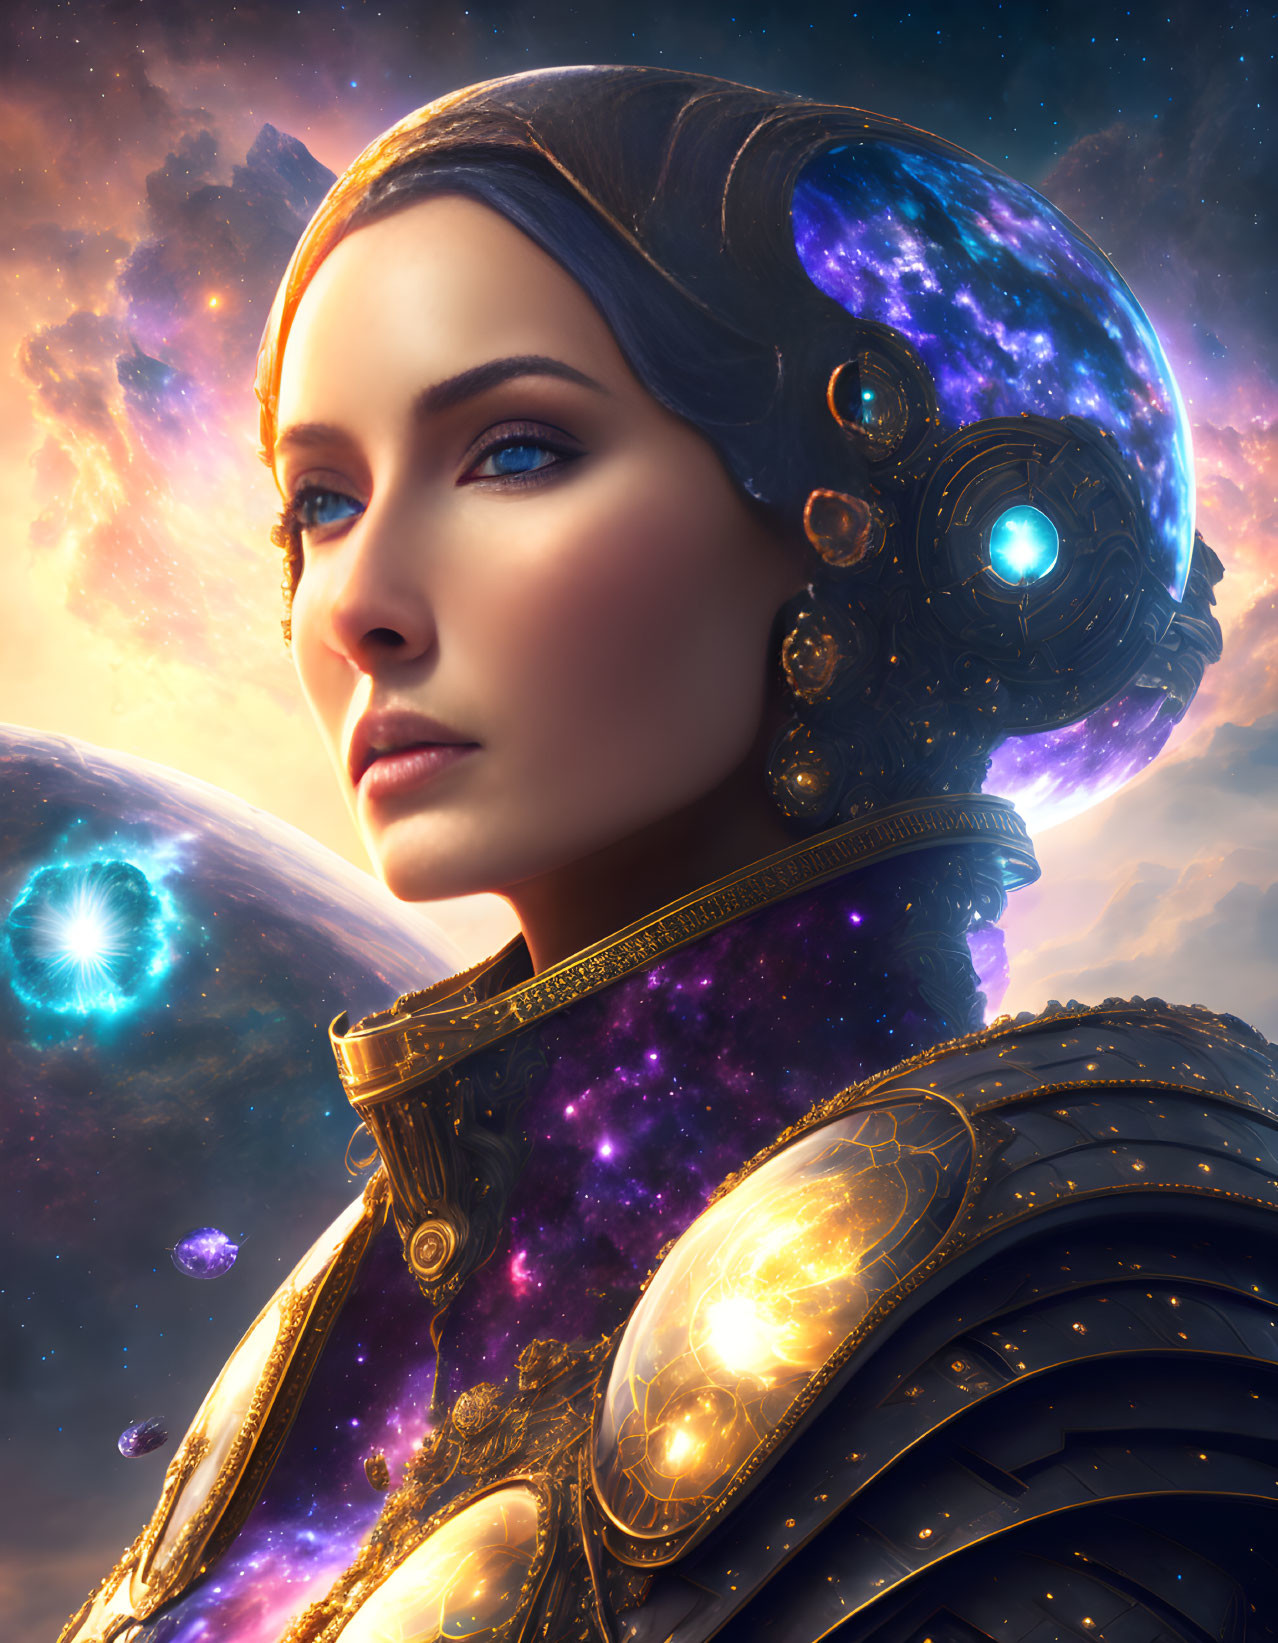 Cosmic-themed digital art portrait of a woman in celestial attire